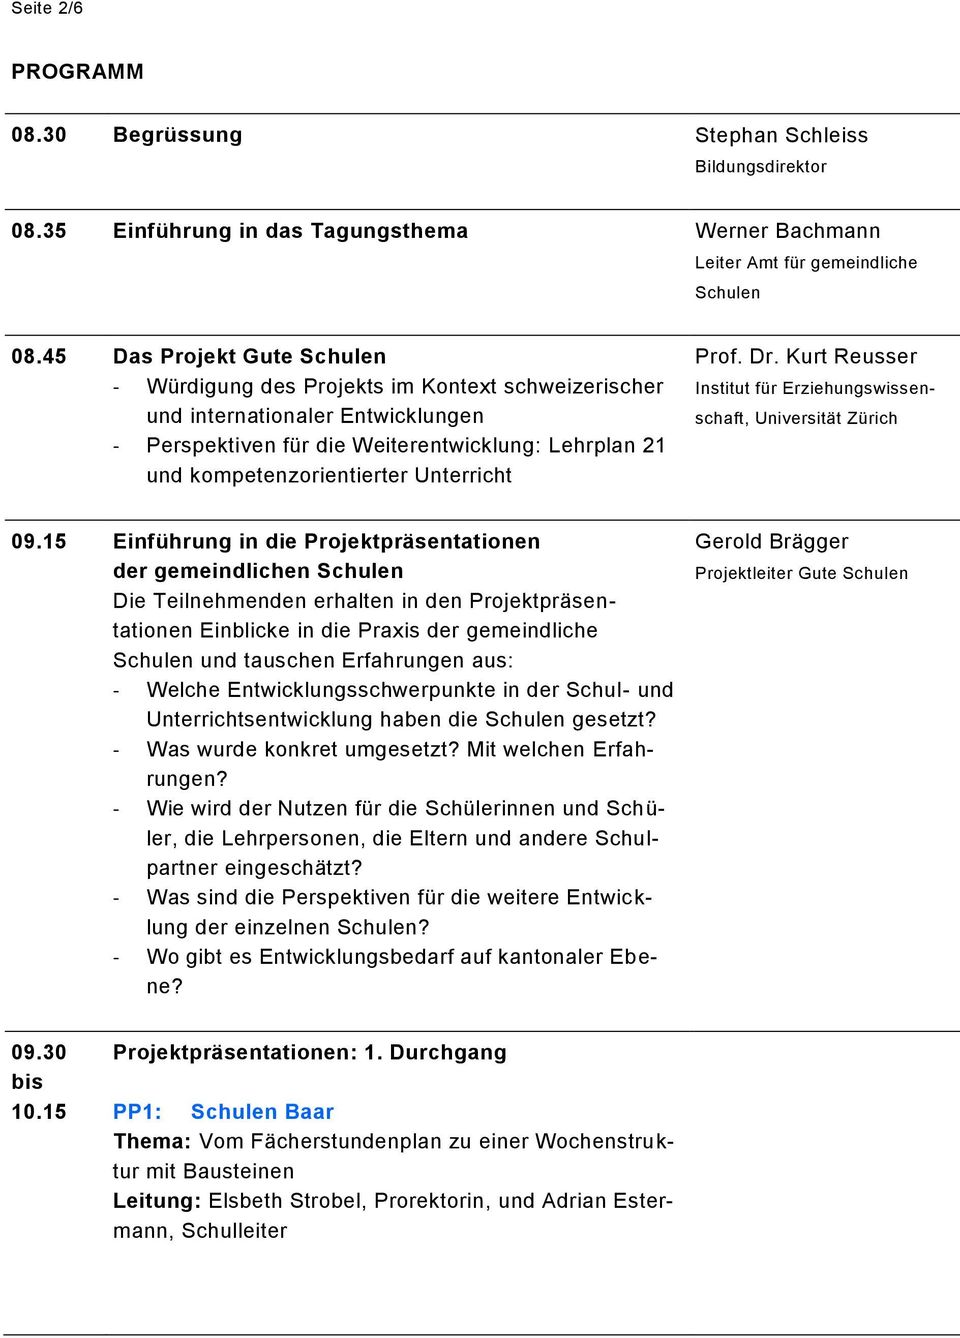 Unterricht Prof. Dr. Kurt Reusser Institut für Erziehungswissenschaft, Universität Zürich 09.